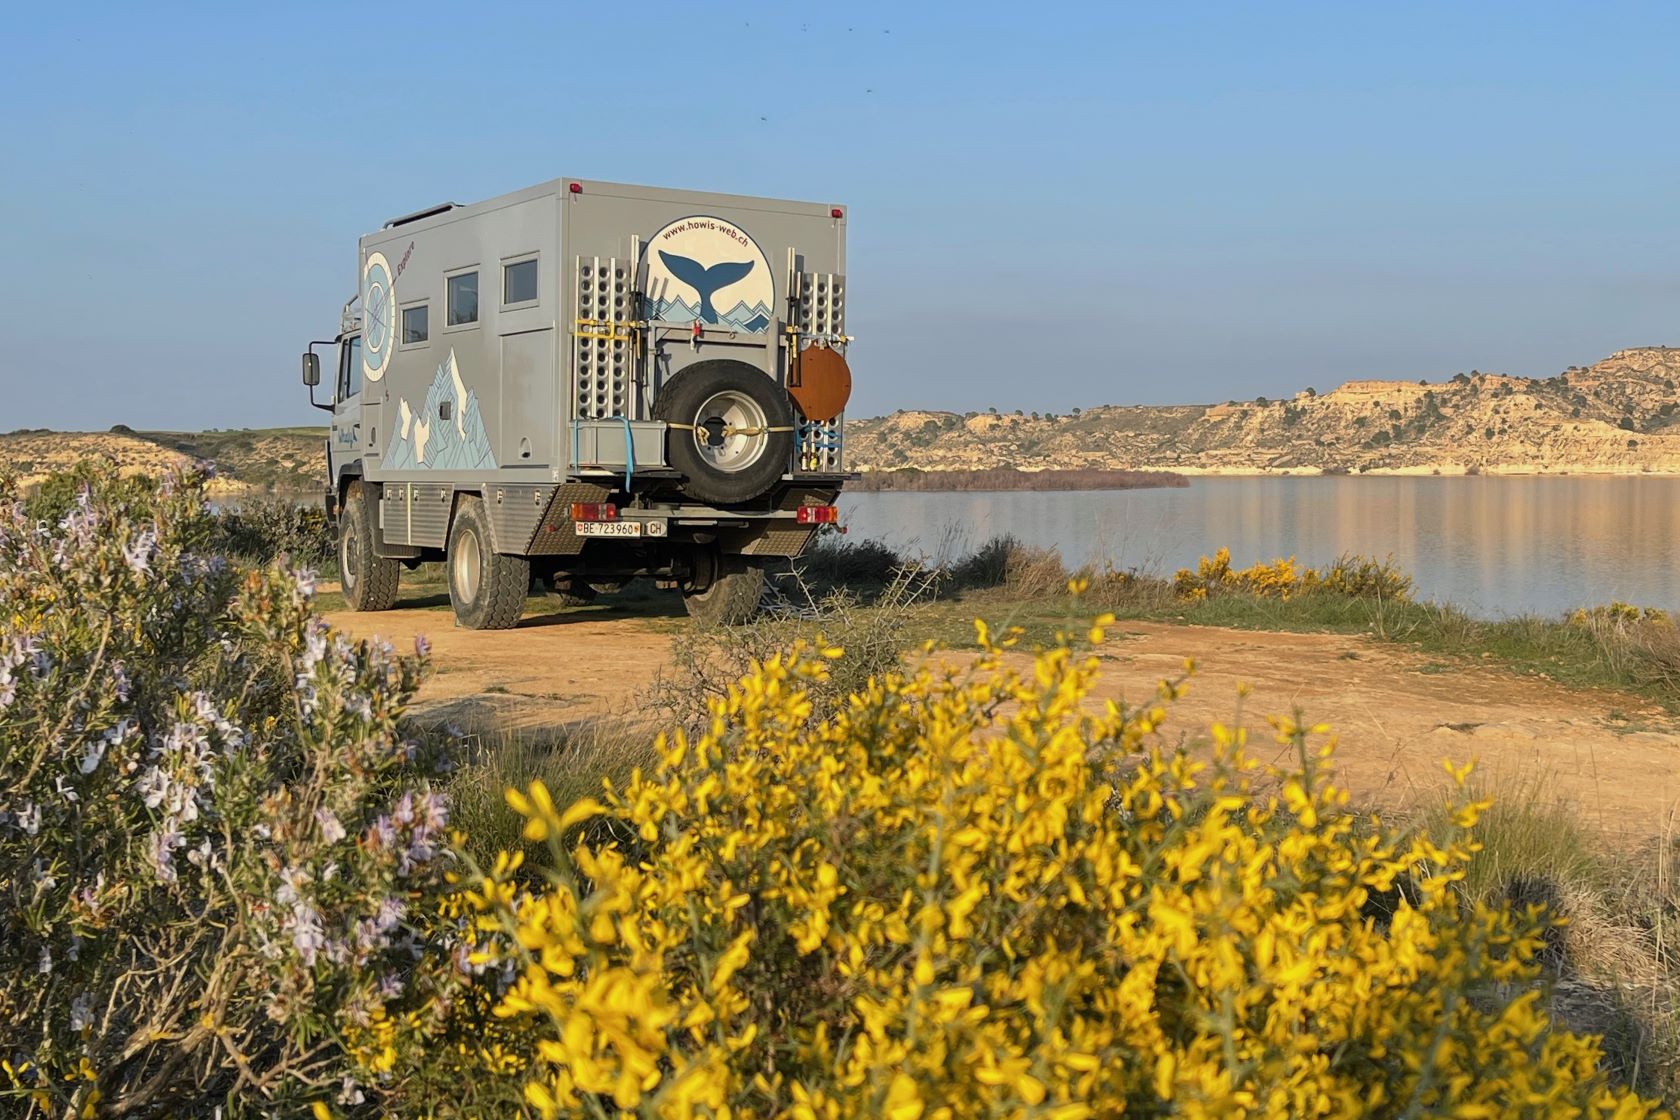 Freistehplätze Camping Spanien mit dem Expeditionsmobil